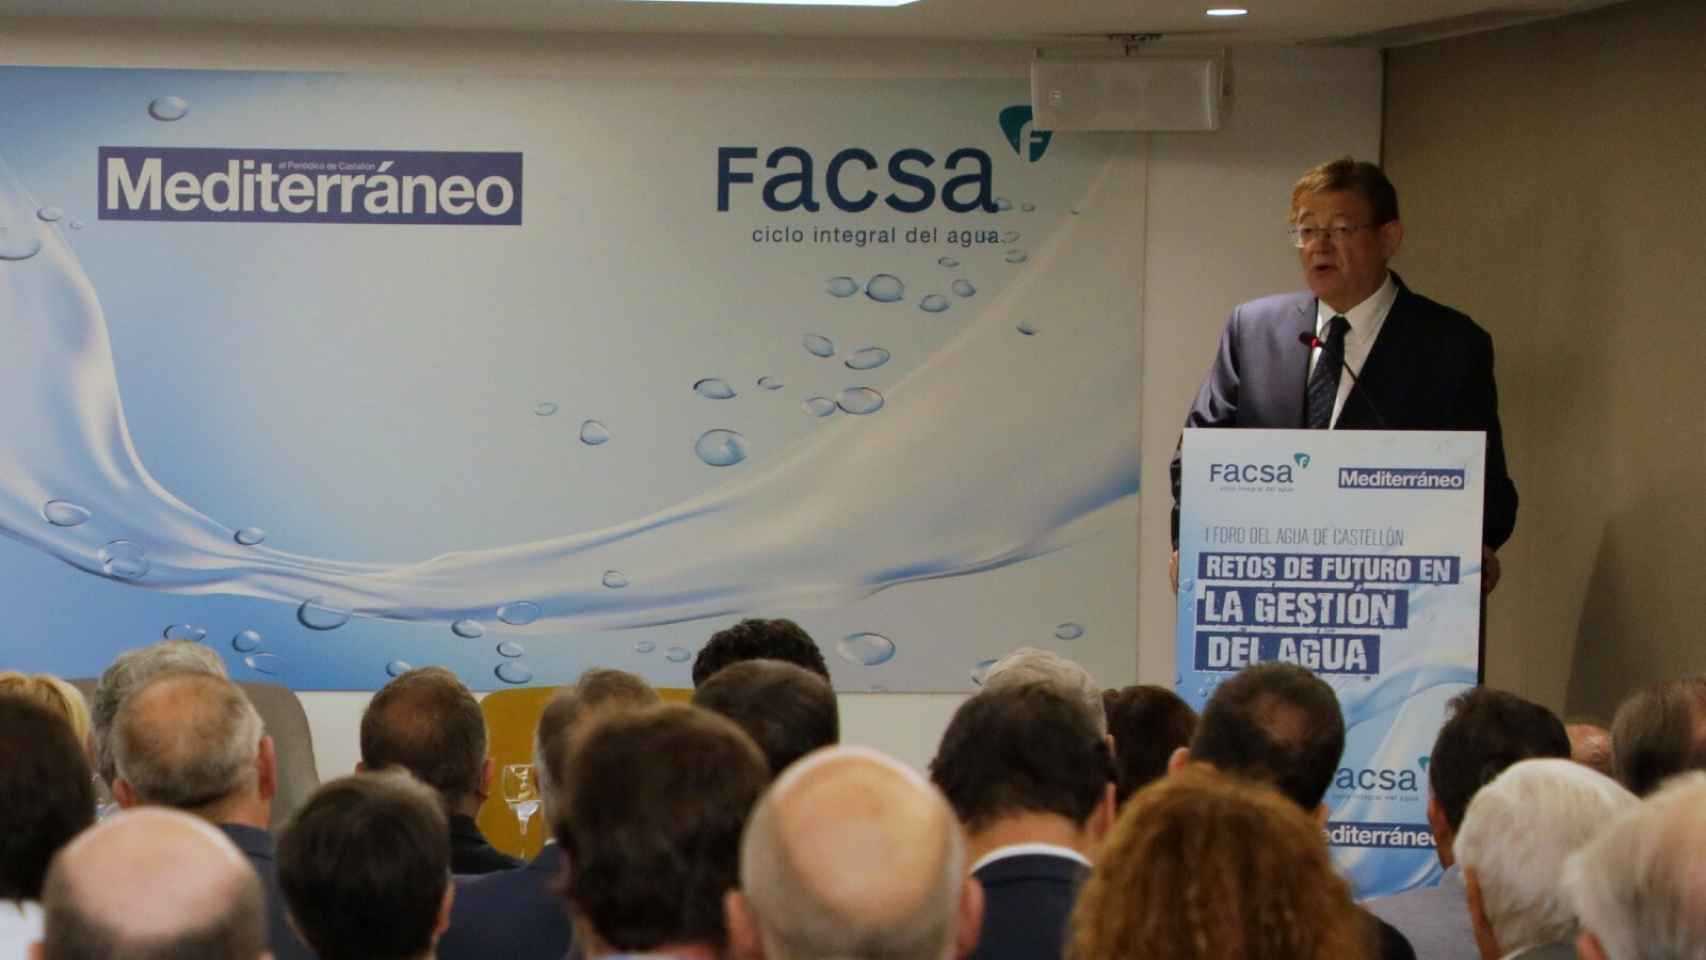 El presidente Puig, en un evento organizado por El Periódico Mediterráneo, en el que tiene acciones. EE